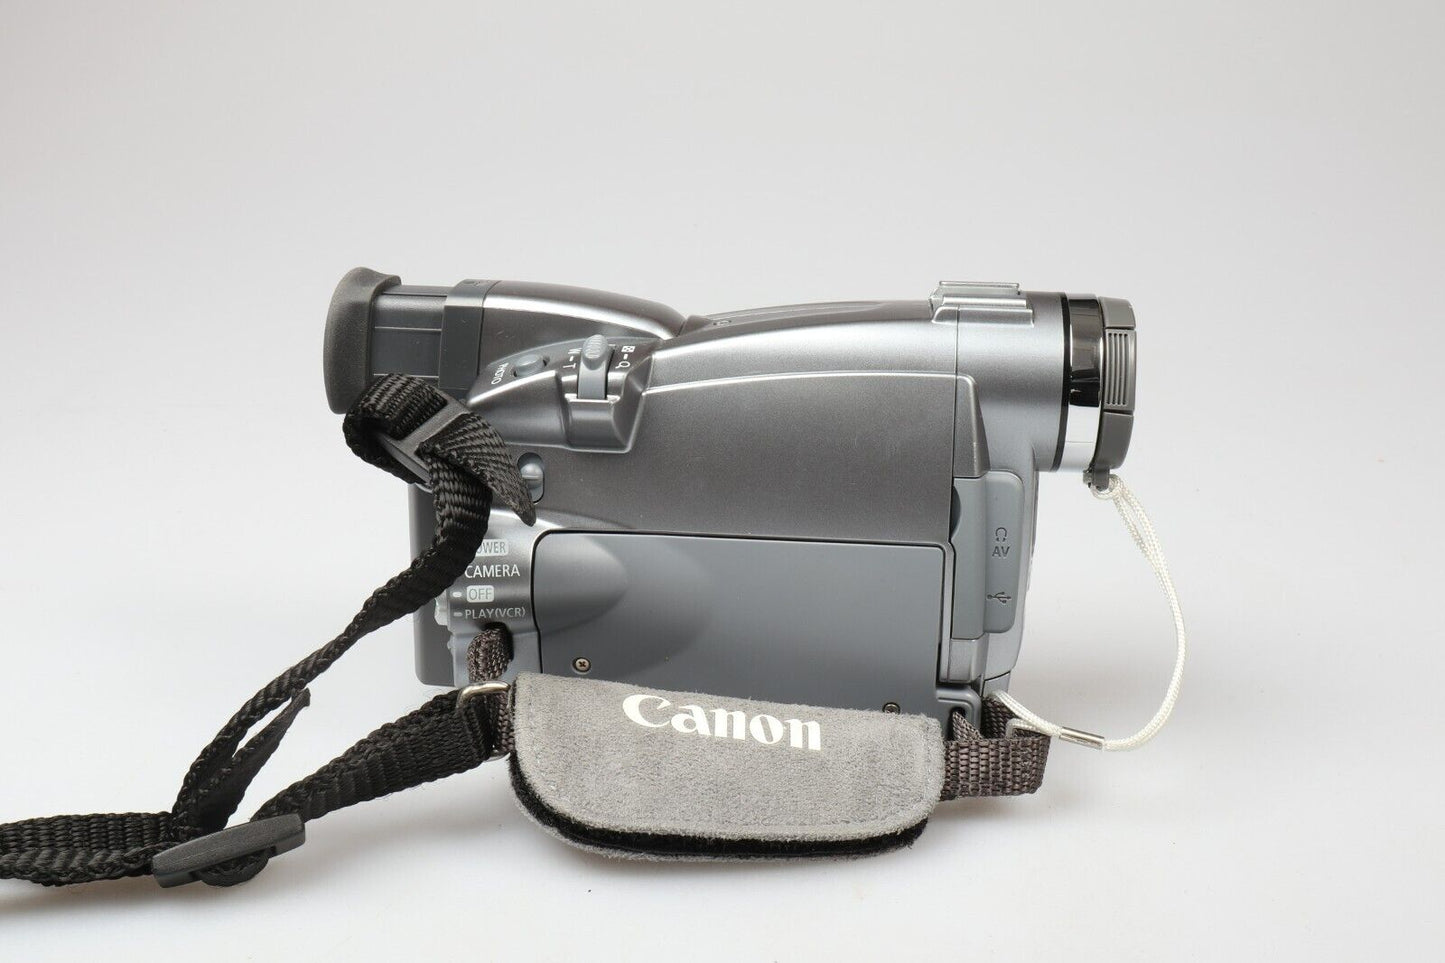 Canon MV750i | Mini DV Video Camcorder | Silver